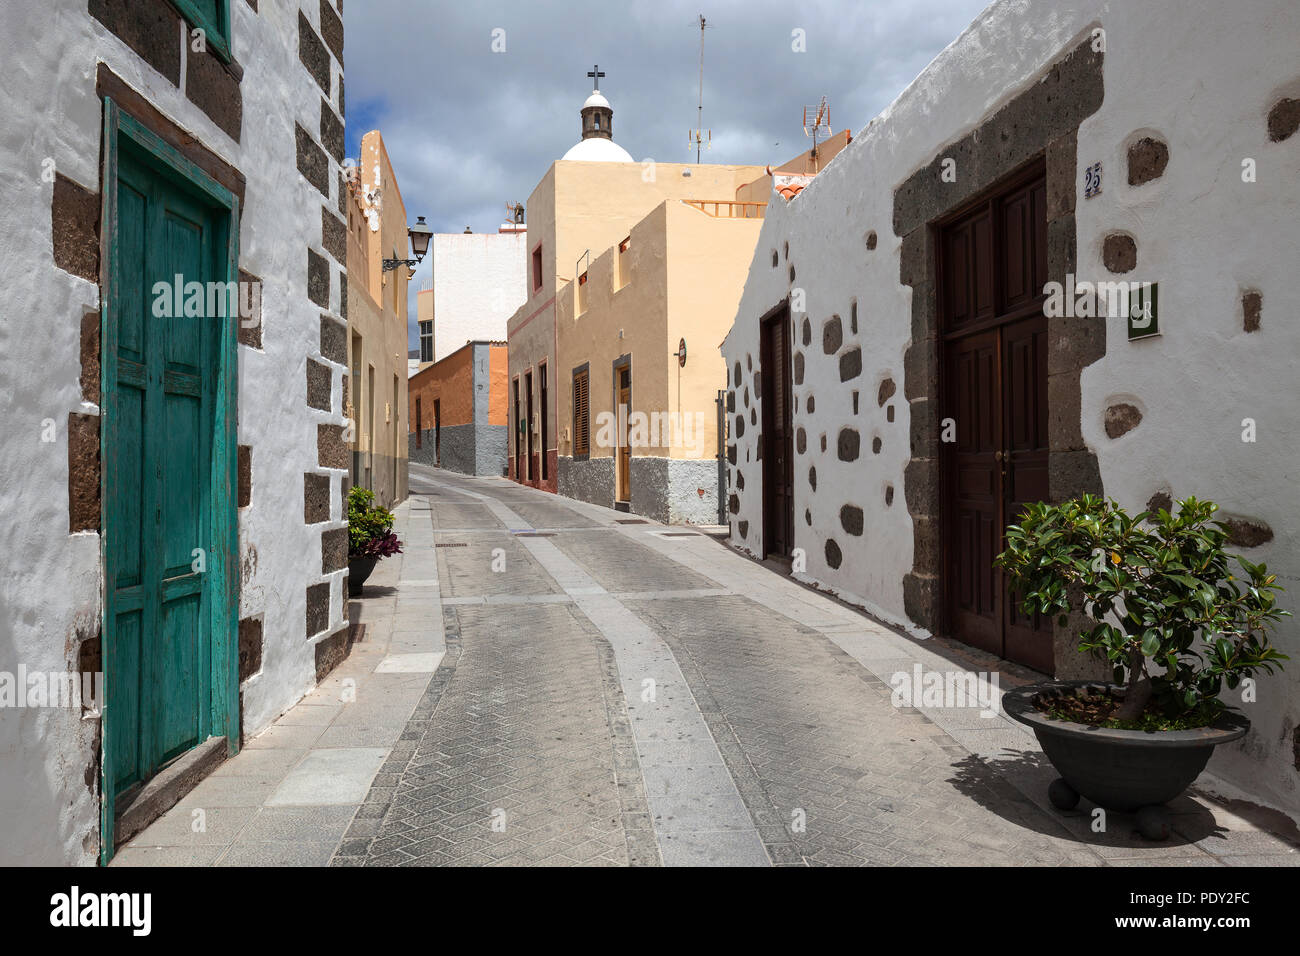 Alley Calle el progreso, casas típicas, Old Town, Agüimes, Gran Canaria, Islas Canarias, España Foto de stock